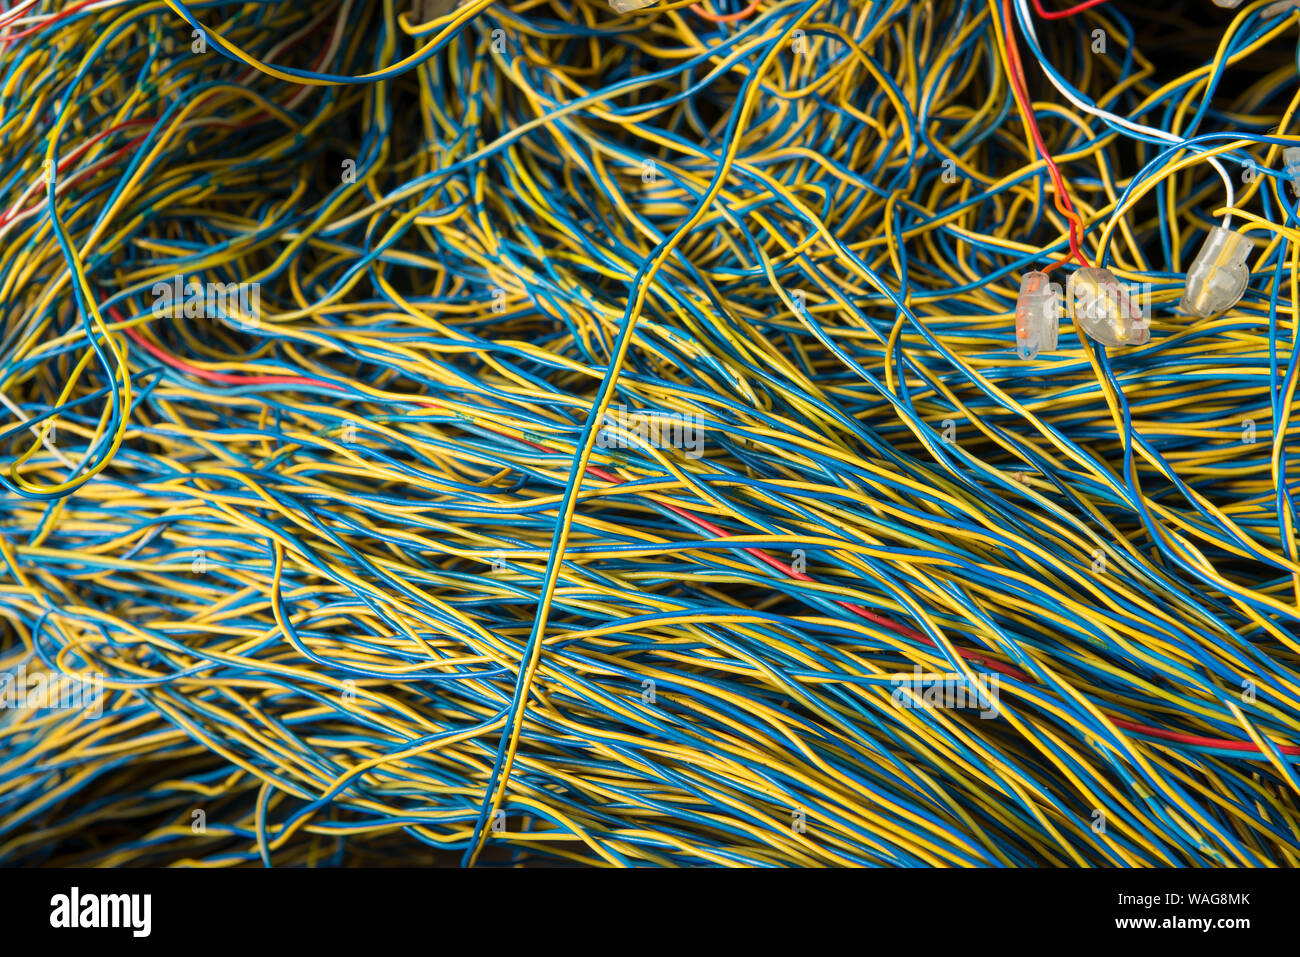 Verworrene Masse von verdrillten Telefonleitungen in einem Netzwerk auf öffentlichen Fußweg repariert wird, präsentiert ein echtes Rätsel, Links auf Kaffee Pause Stockfoto